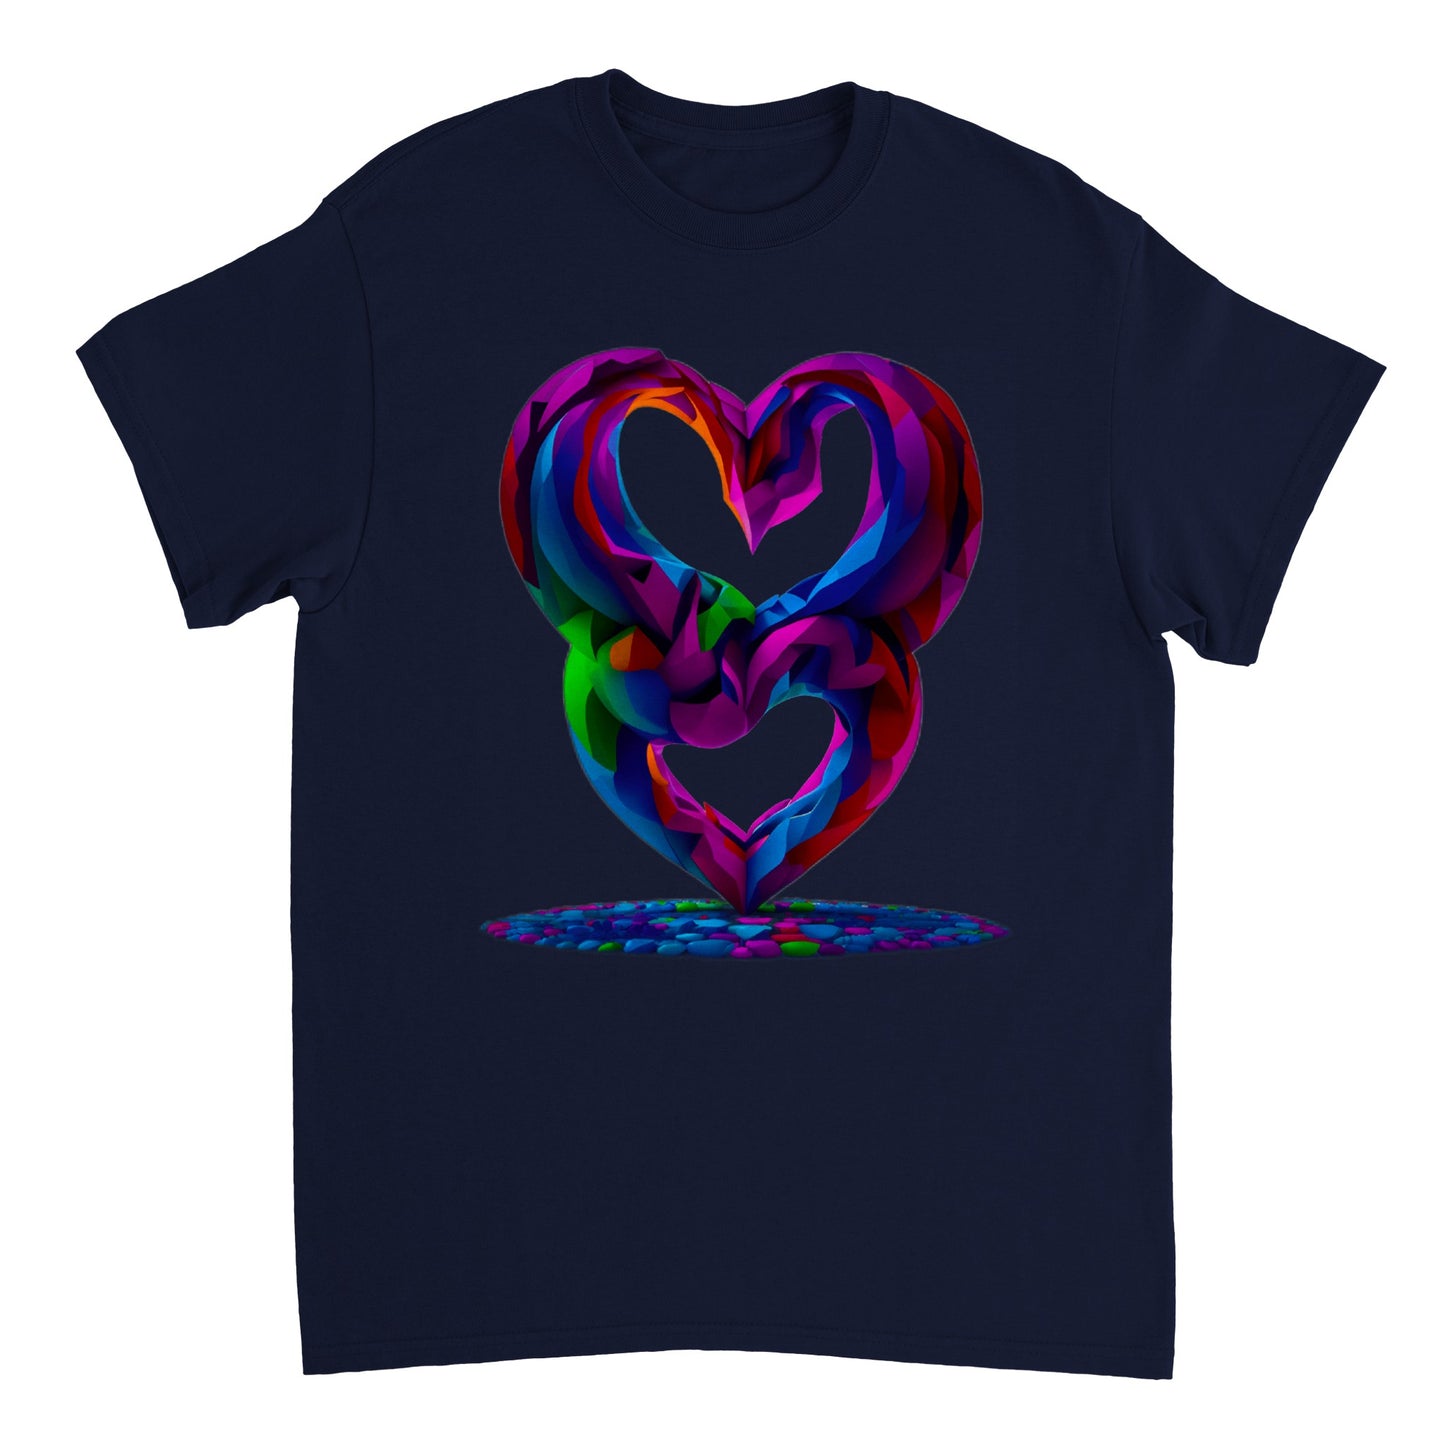 Love Heart - Heavyweight Unisex Crewneck T-shirt 29